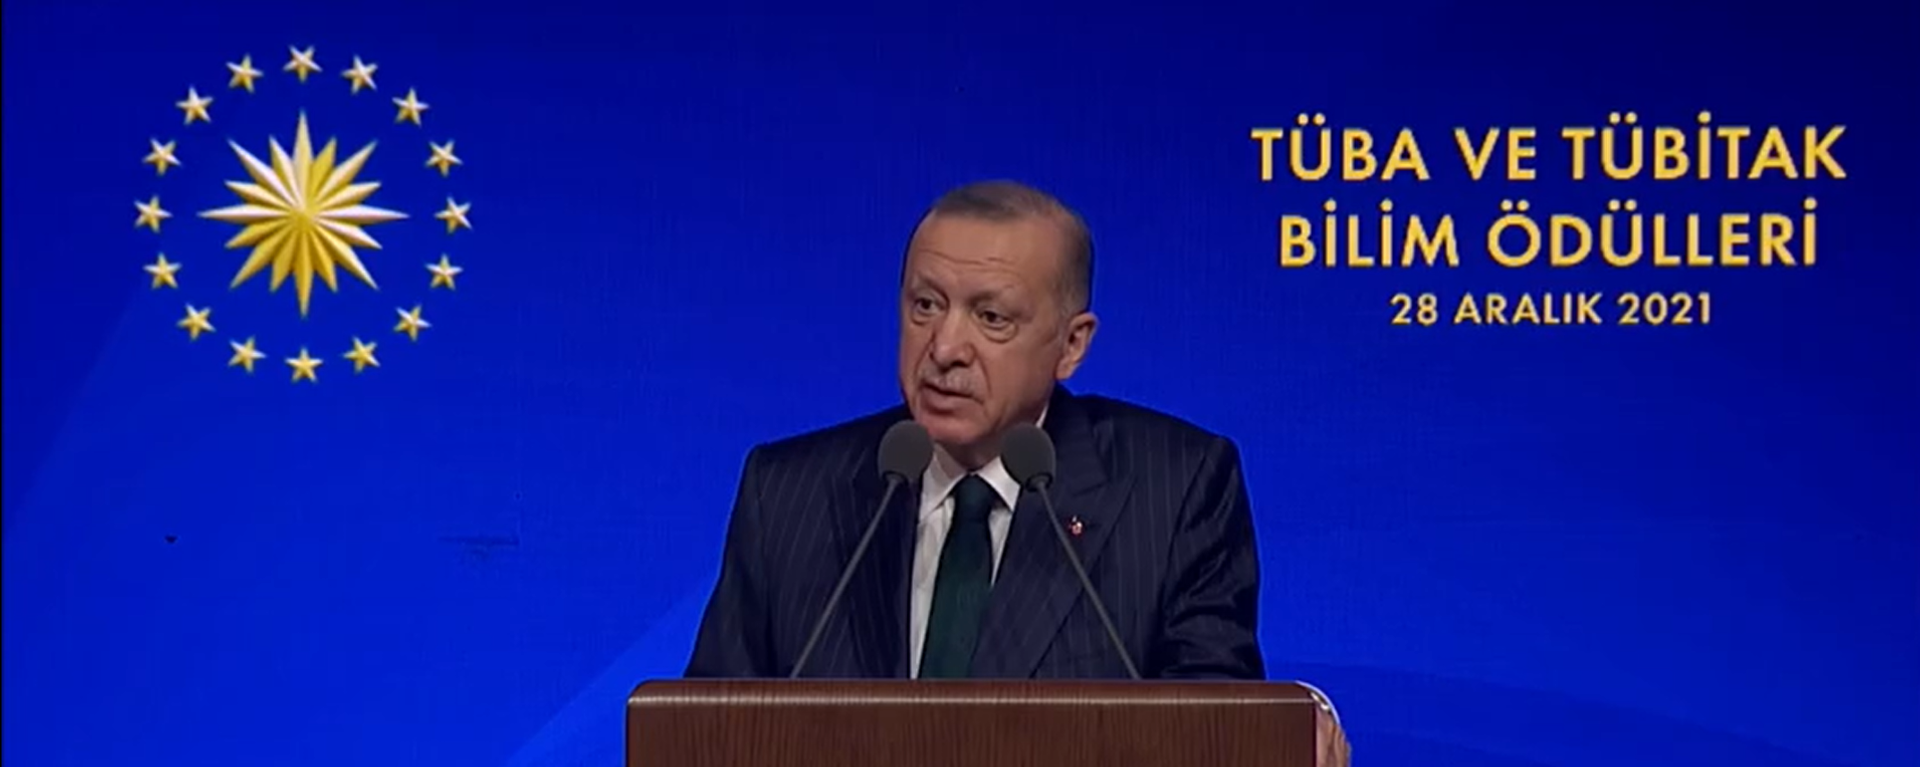 Cumhurbaşkanı Erdoğan, TÜBİTAK ve TÜBA Ödülleri Töreni'nde Tüm bilim insanlarımıza şükranlarımı sunuyorum dedi. - Sputnik Türkiye, 1920, 28.12.2021